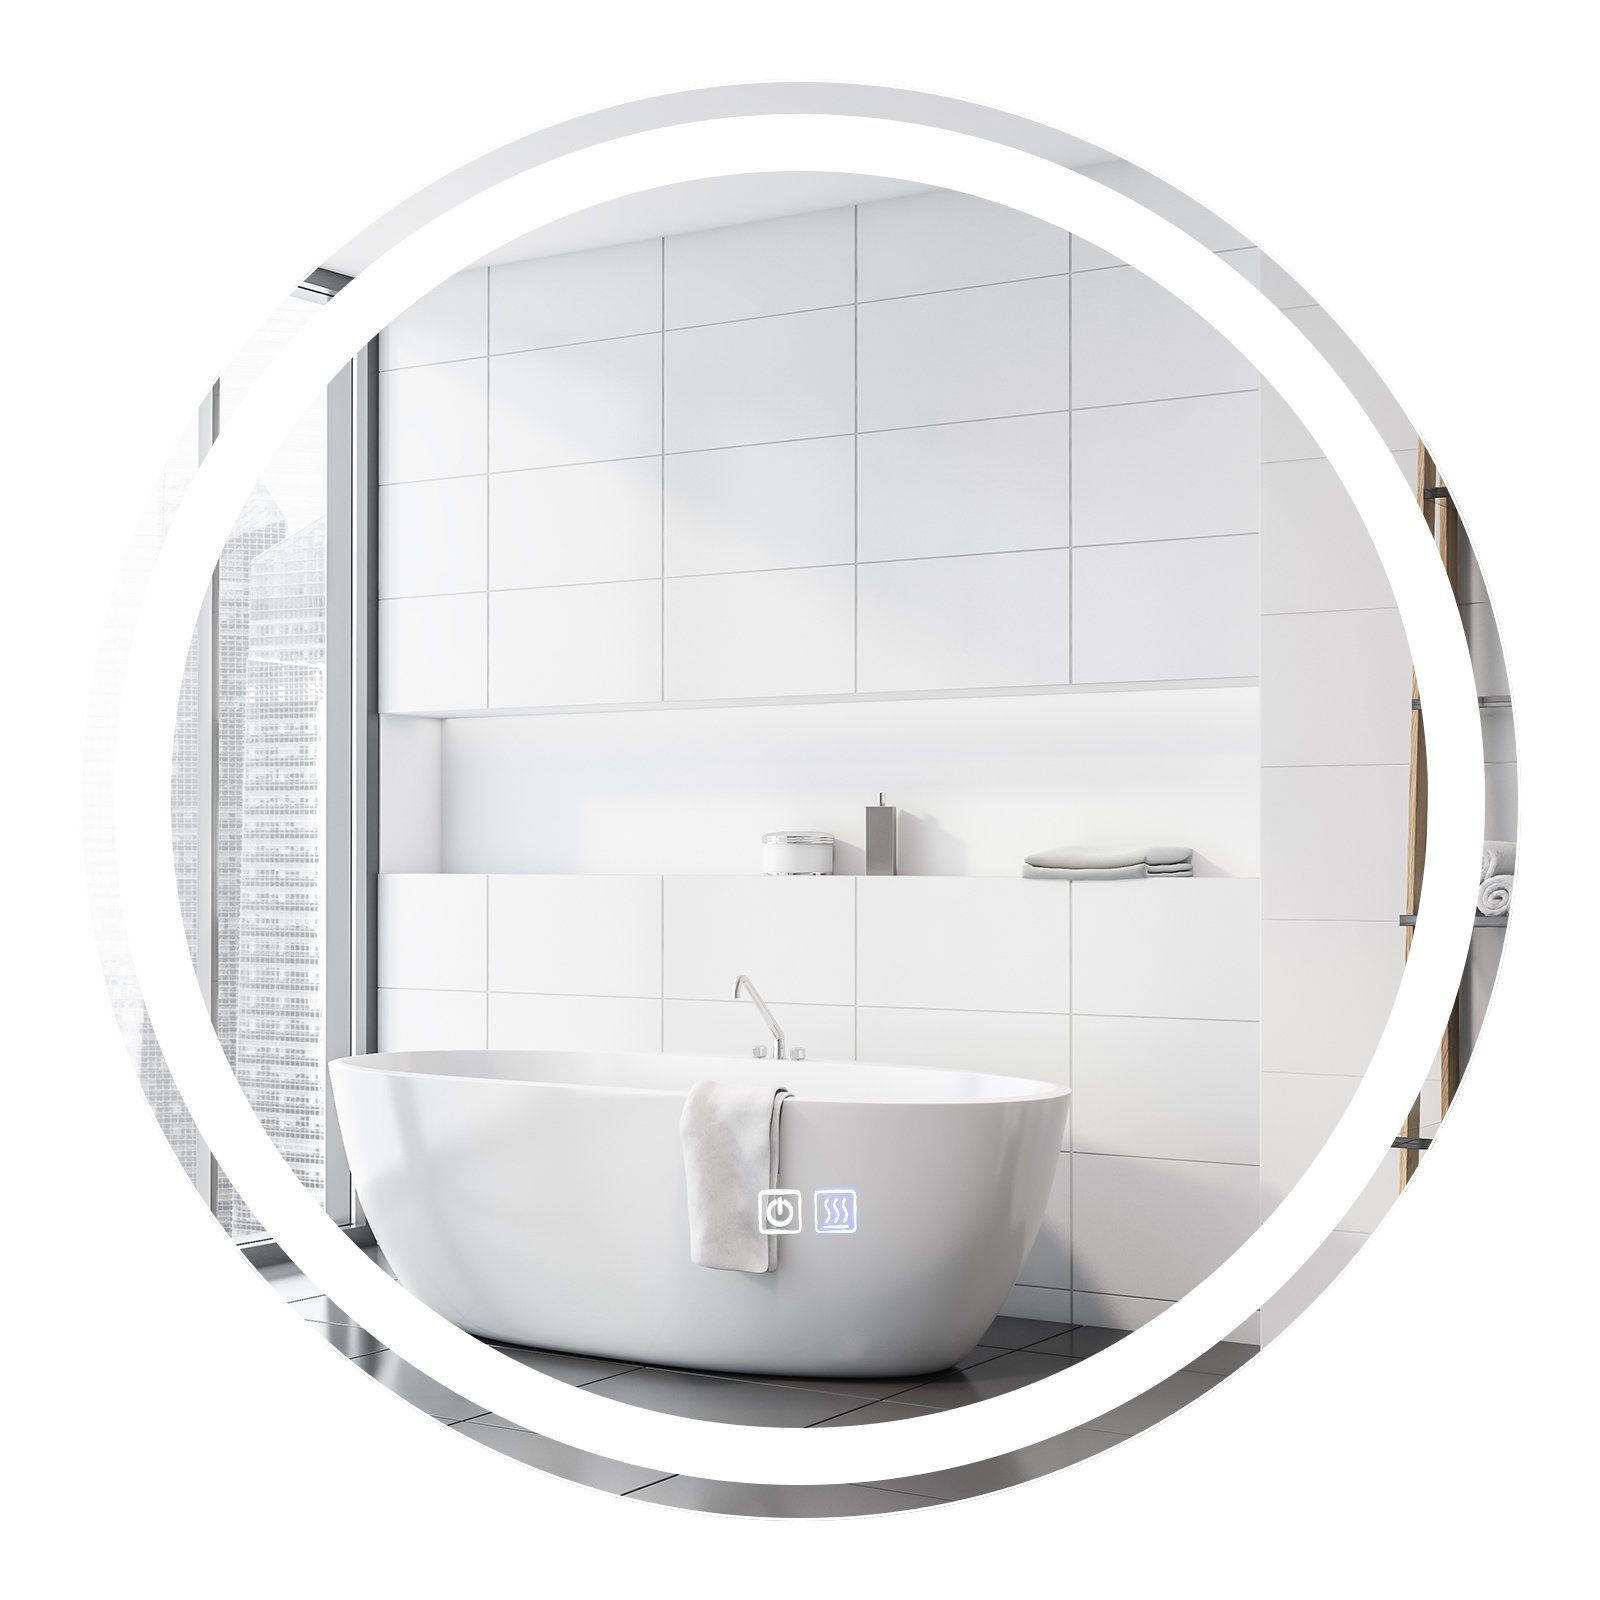 COSTWAY Schminkspiegel LED-Spiegel, Badezimmerspiegel, mit Anti-Beschlage